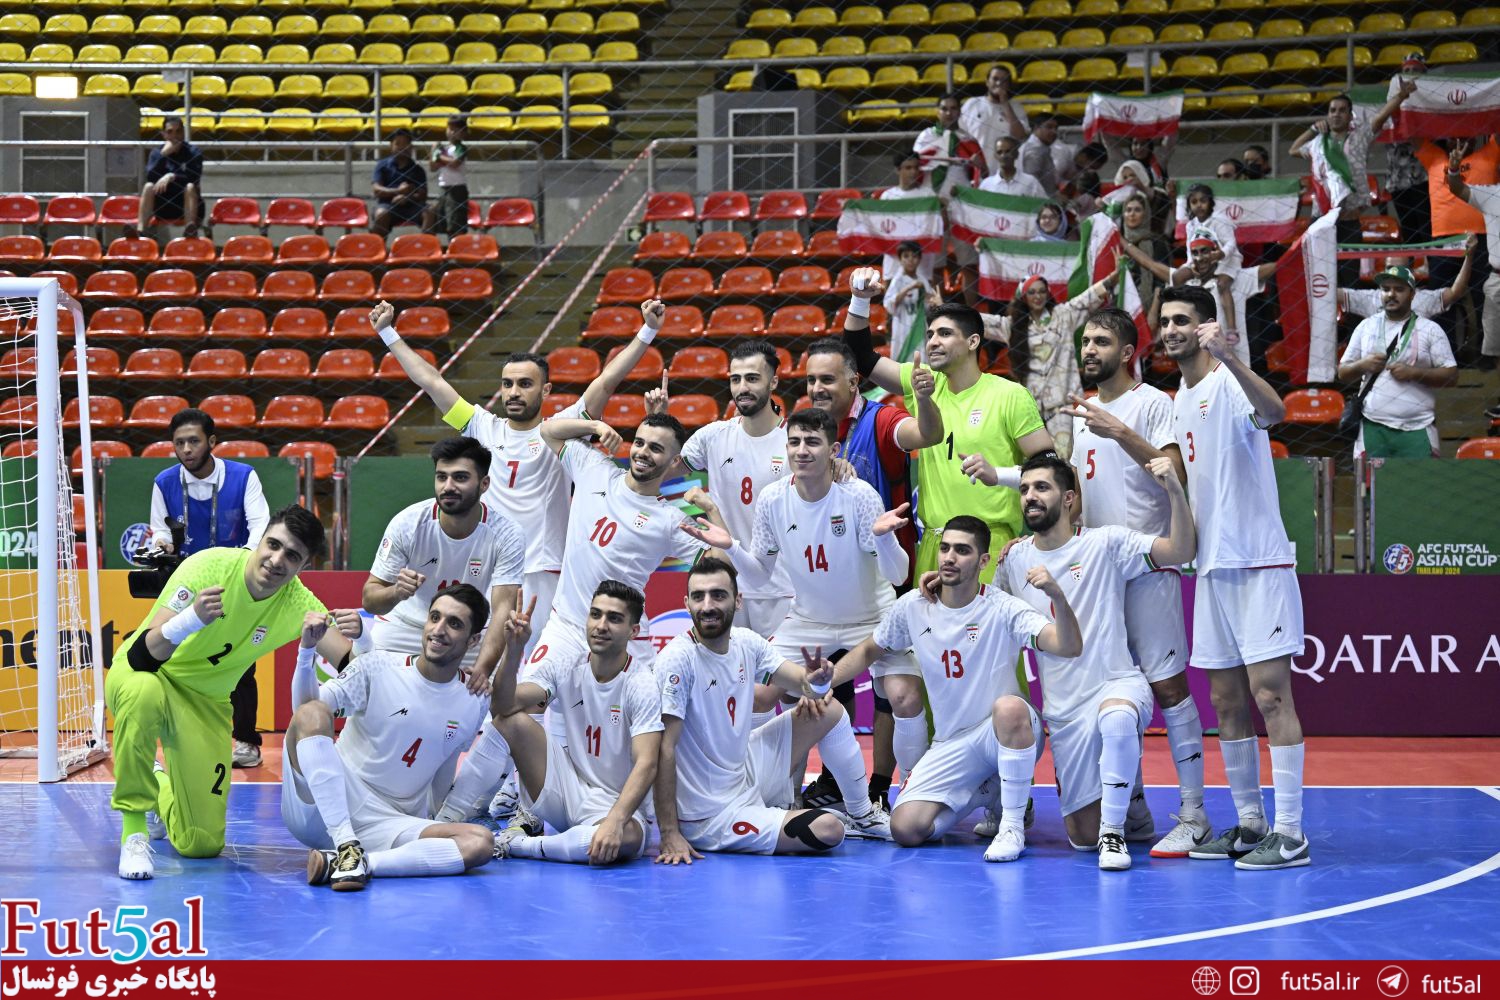 پیام تبریک باشگاه گیتی پسند برای قهرمانی تیم ملی فوتسال ایران